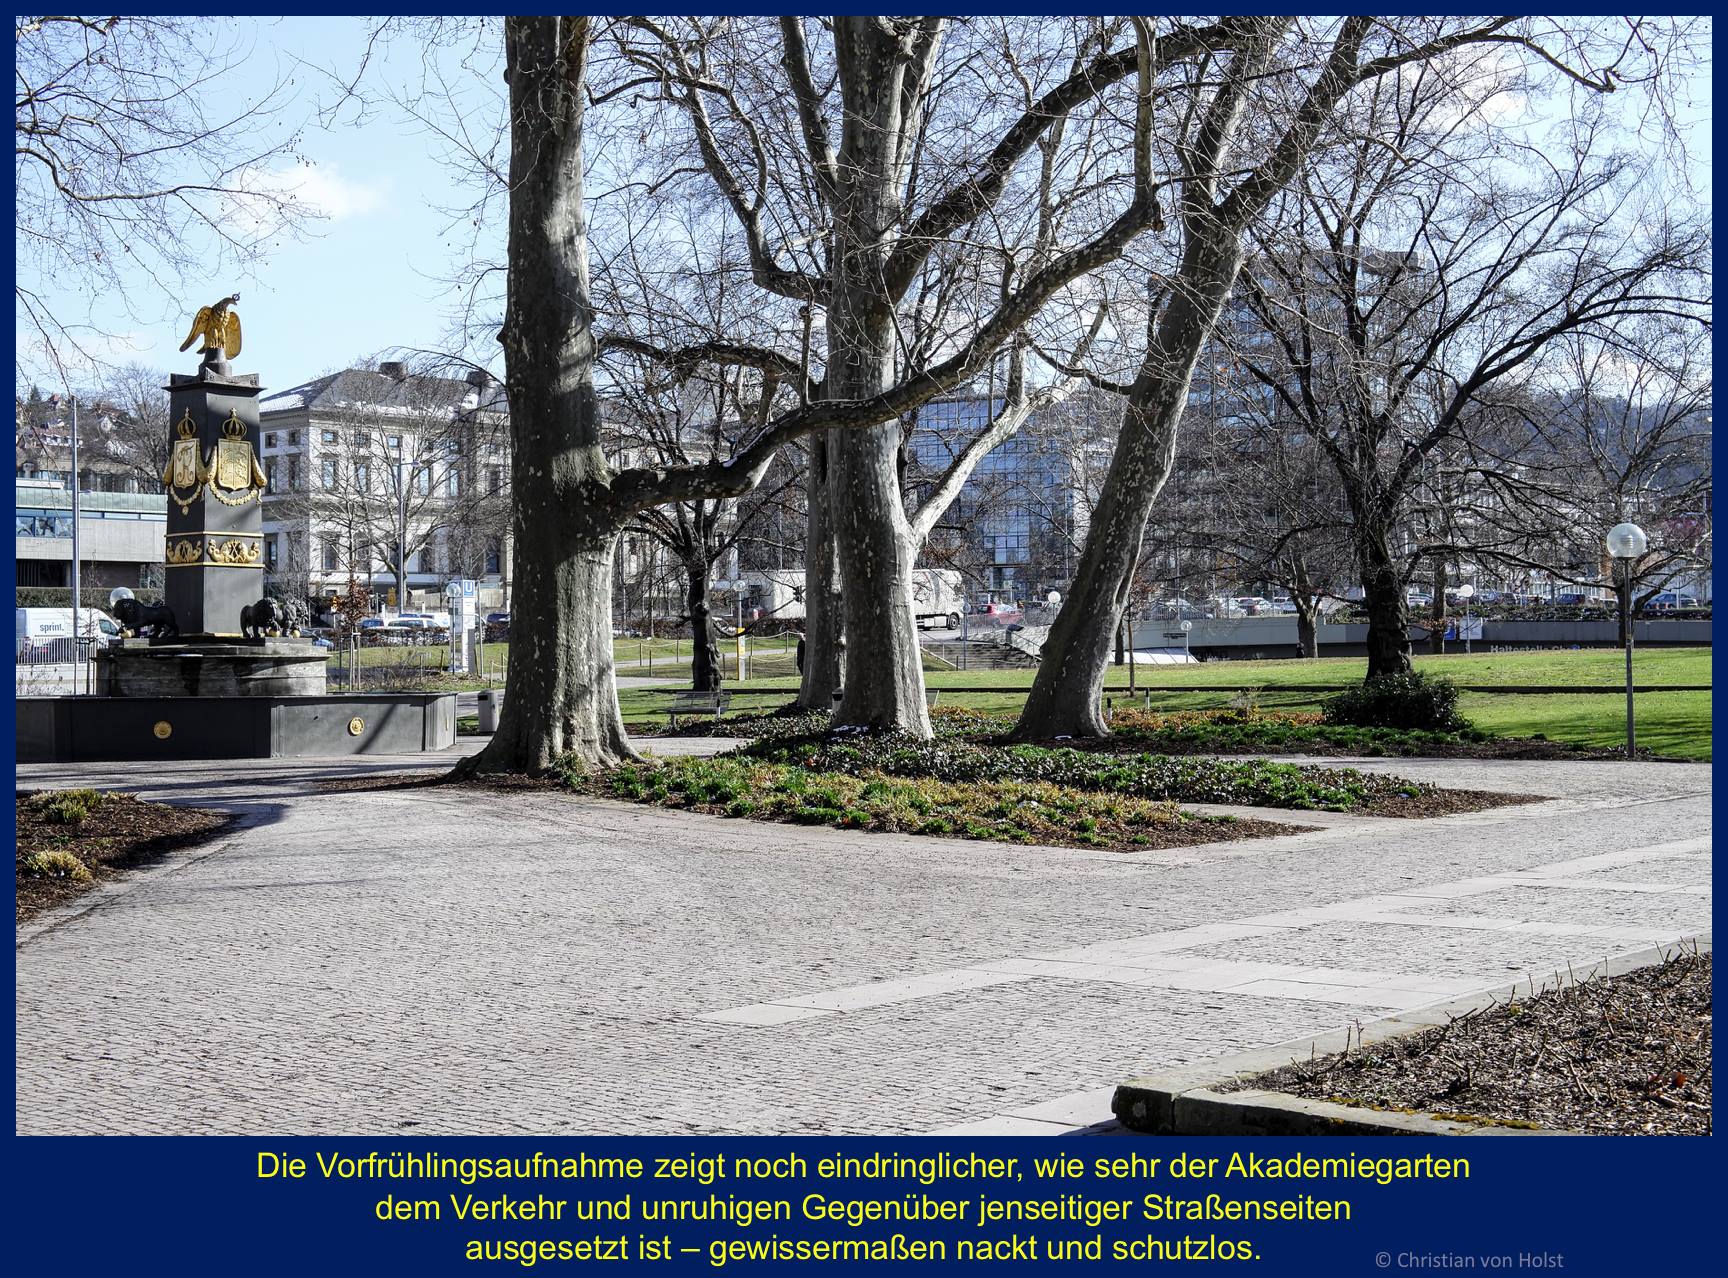 Carlsakademie: Akademiegarten und Löwenbrunnen – jenseits davon die rauschende B14